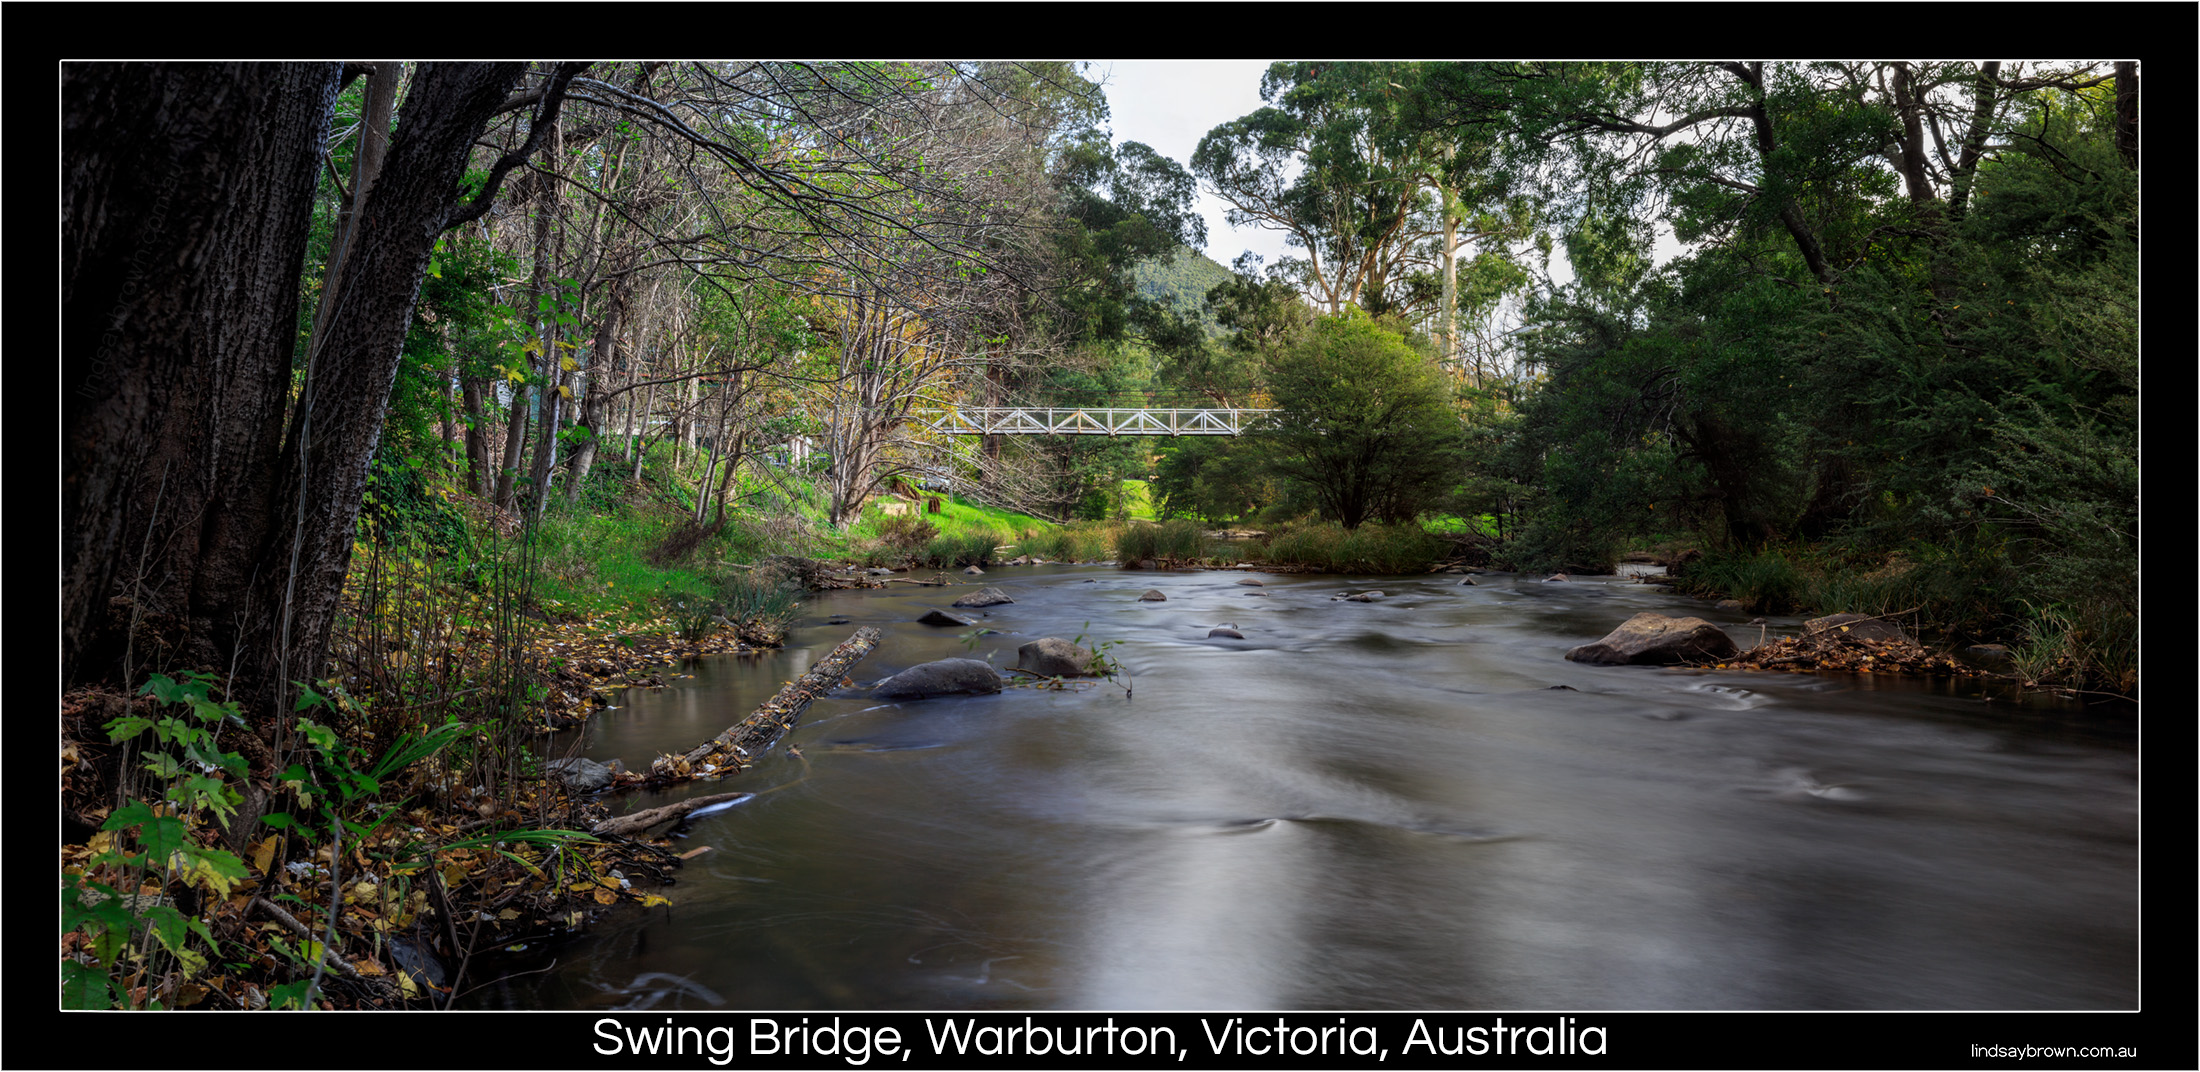 Warburton Swing Bridge